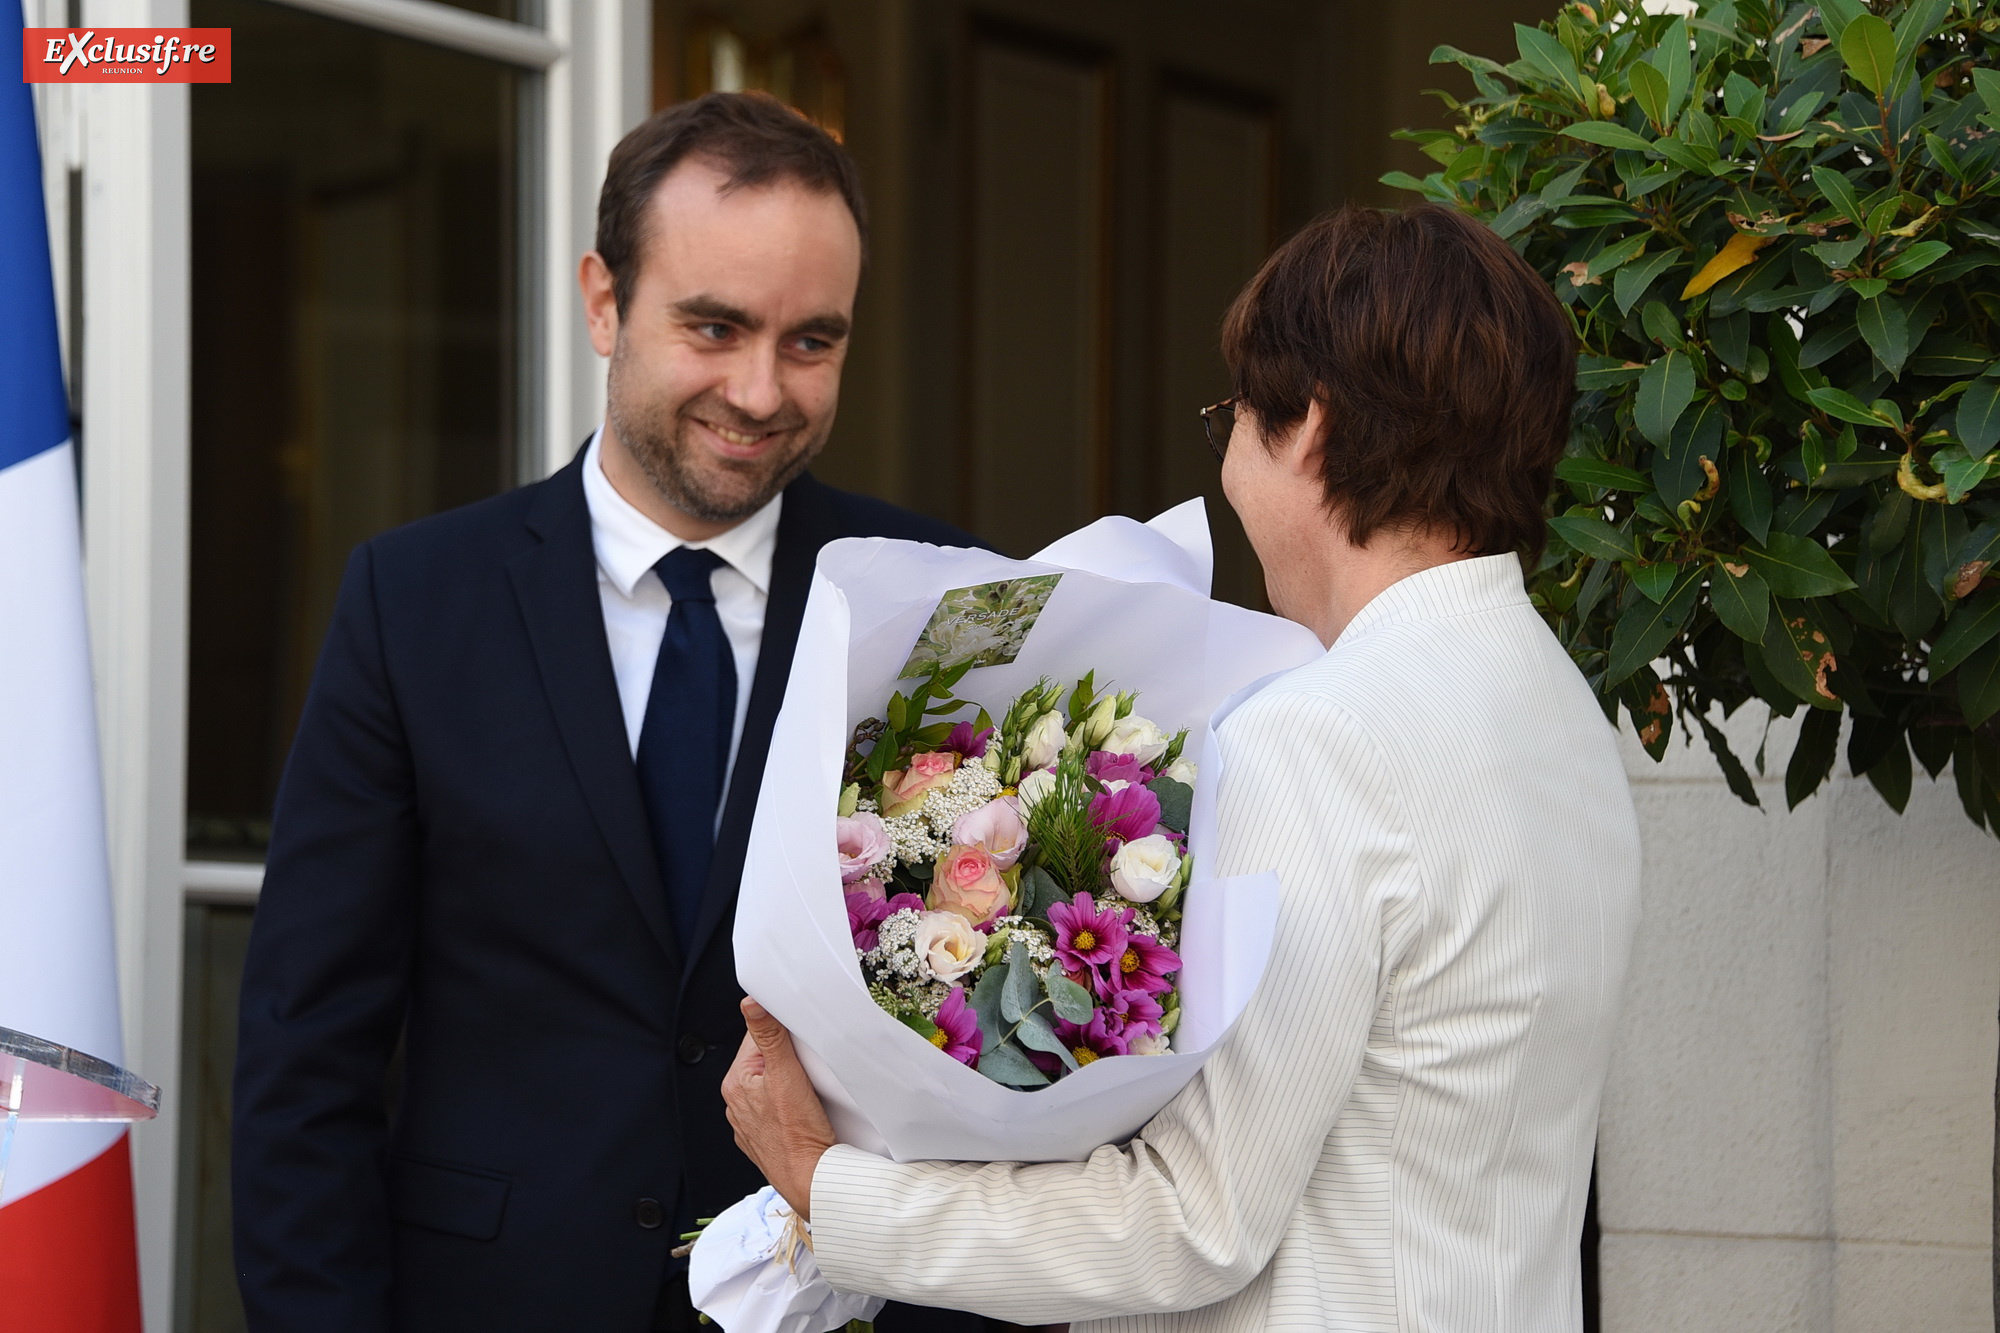 Très gentleman, le nouveau ministre a offert un bouquet à la désormais Ministre de la Mer